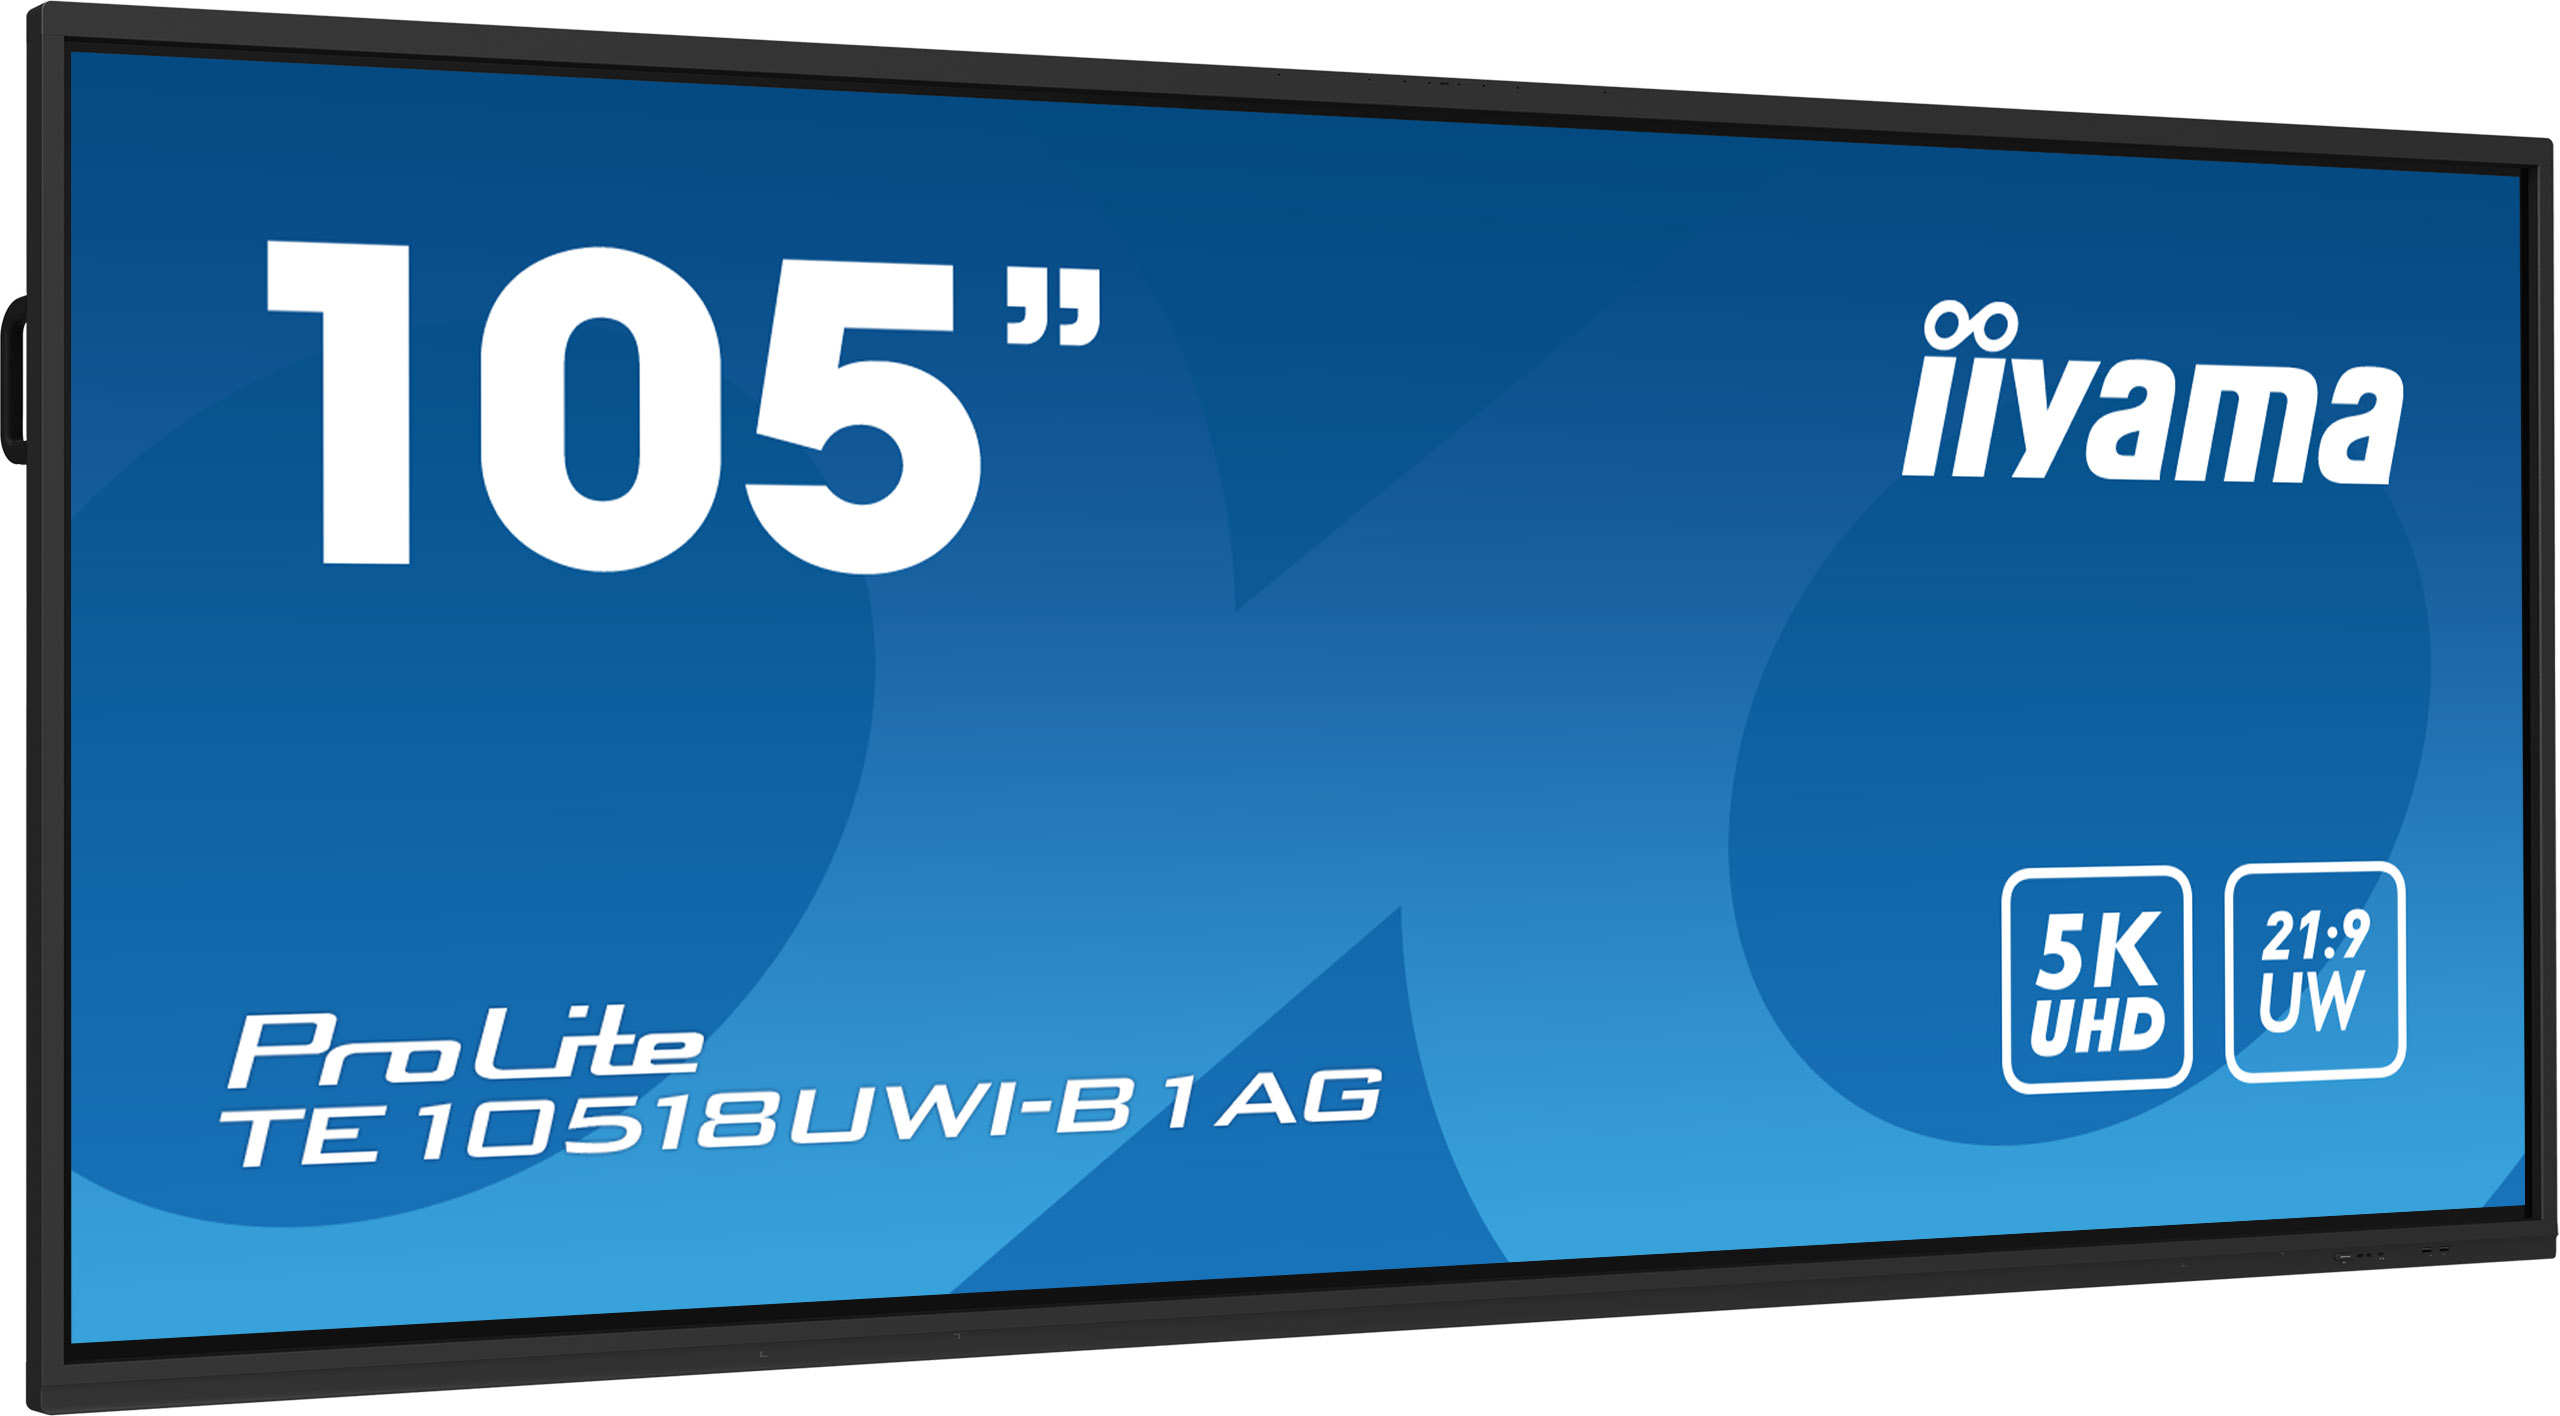 105" iiyama TE10518UWI-B1AG: VA, 5K, Android 11 